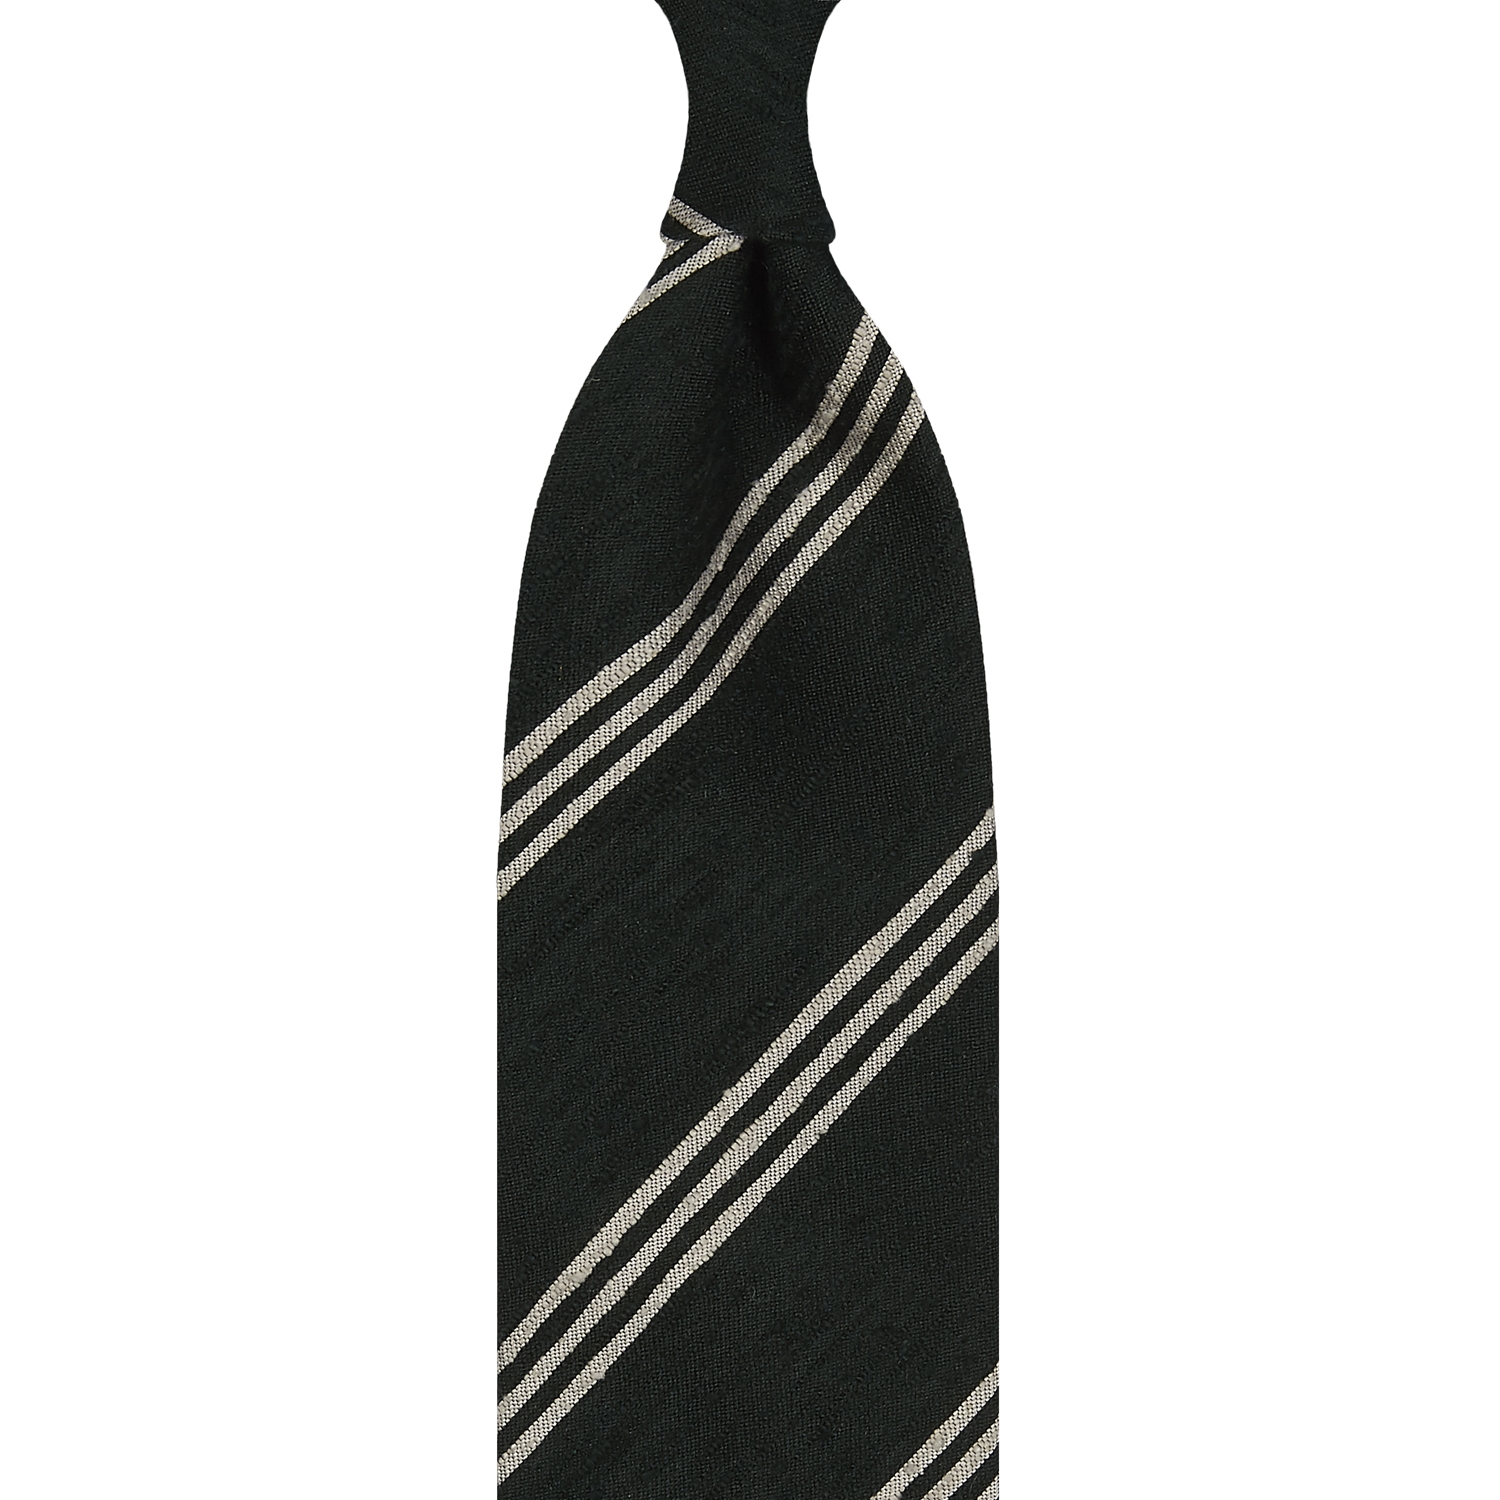 Cravate rayée en shantung de soie vert forêt et beige, roulée à la main